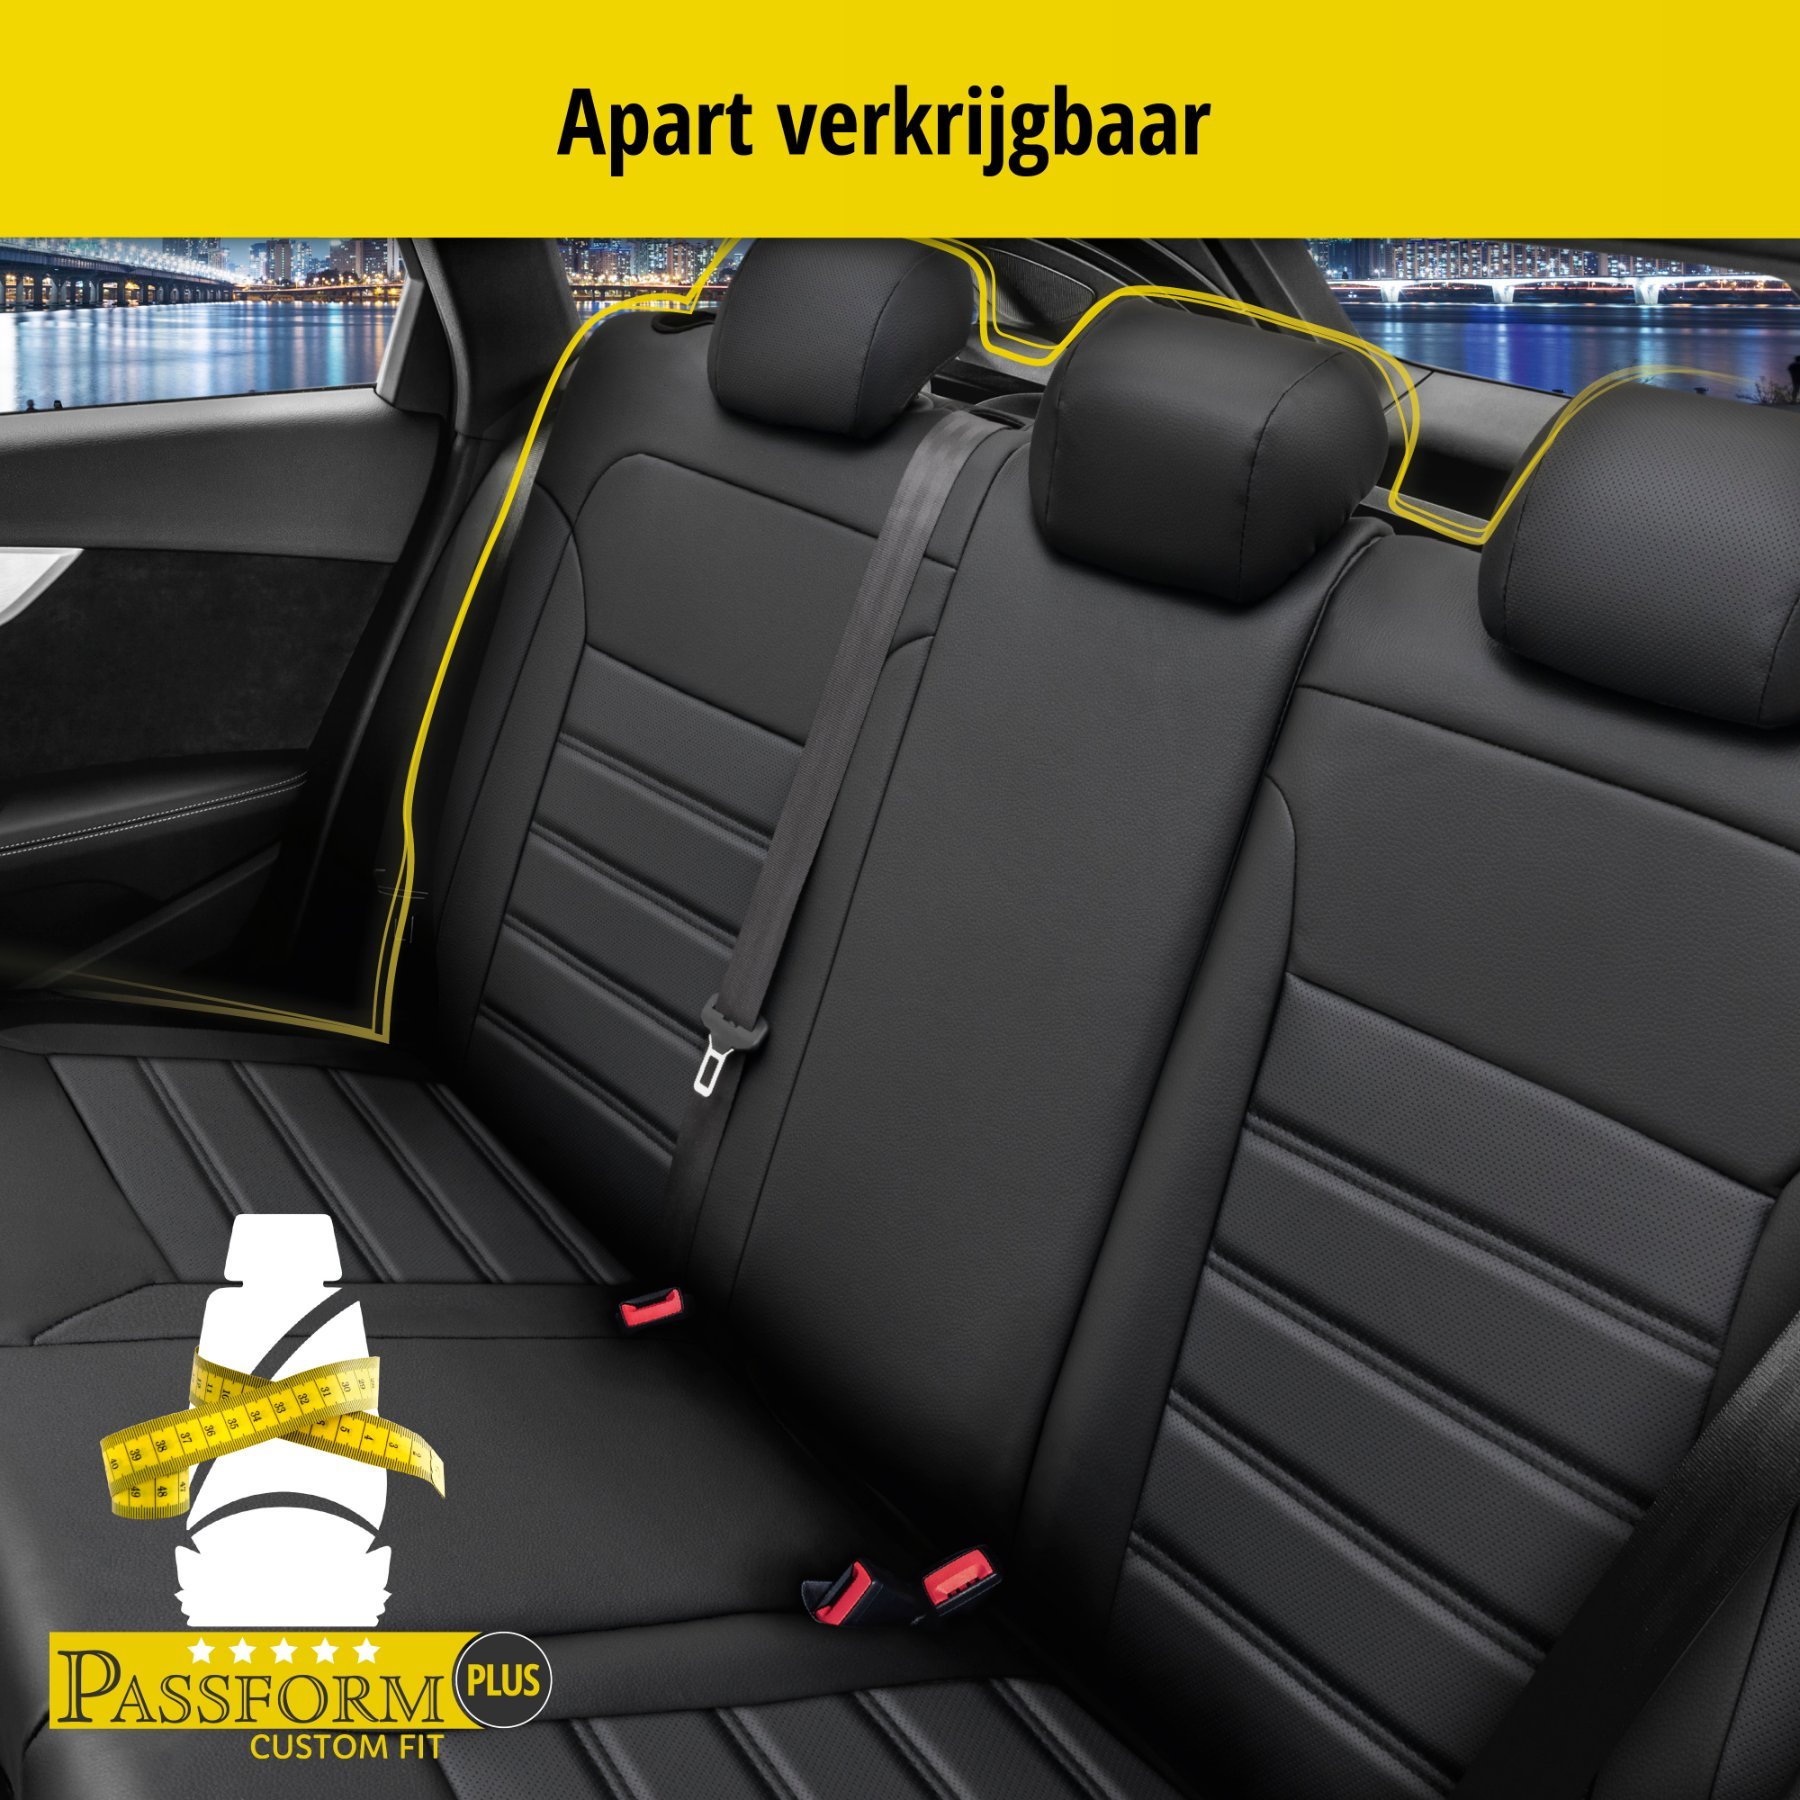 Auto stoelbekleding Robusto geschikt voor VW Golf 6 Trendline 10/2008 - 12/2014, 2 enkele zetelhoezen voor standard zetels